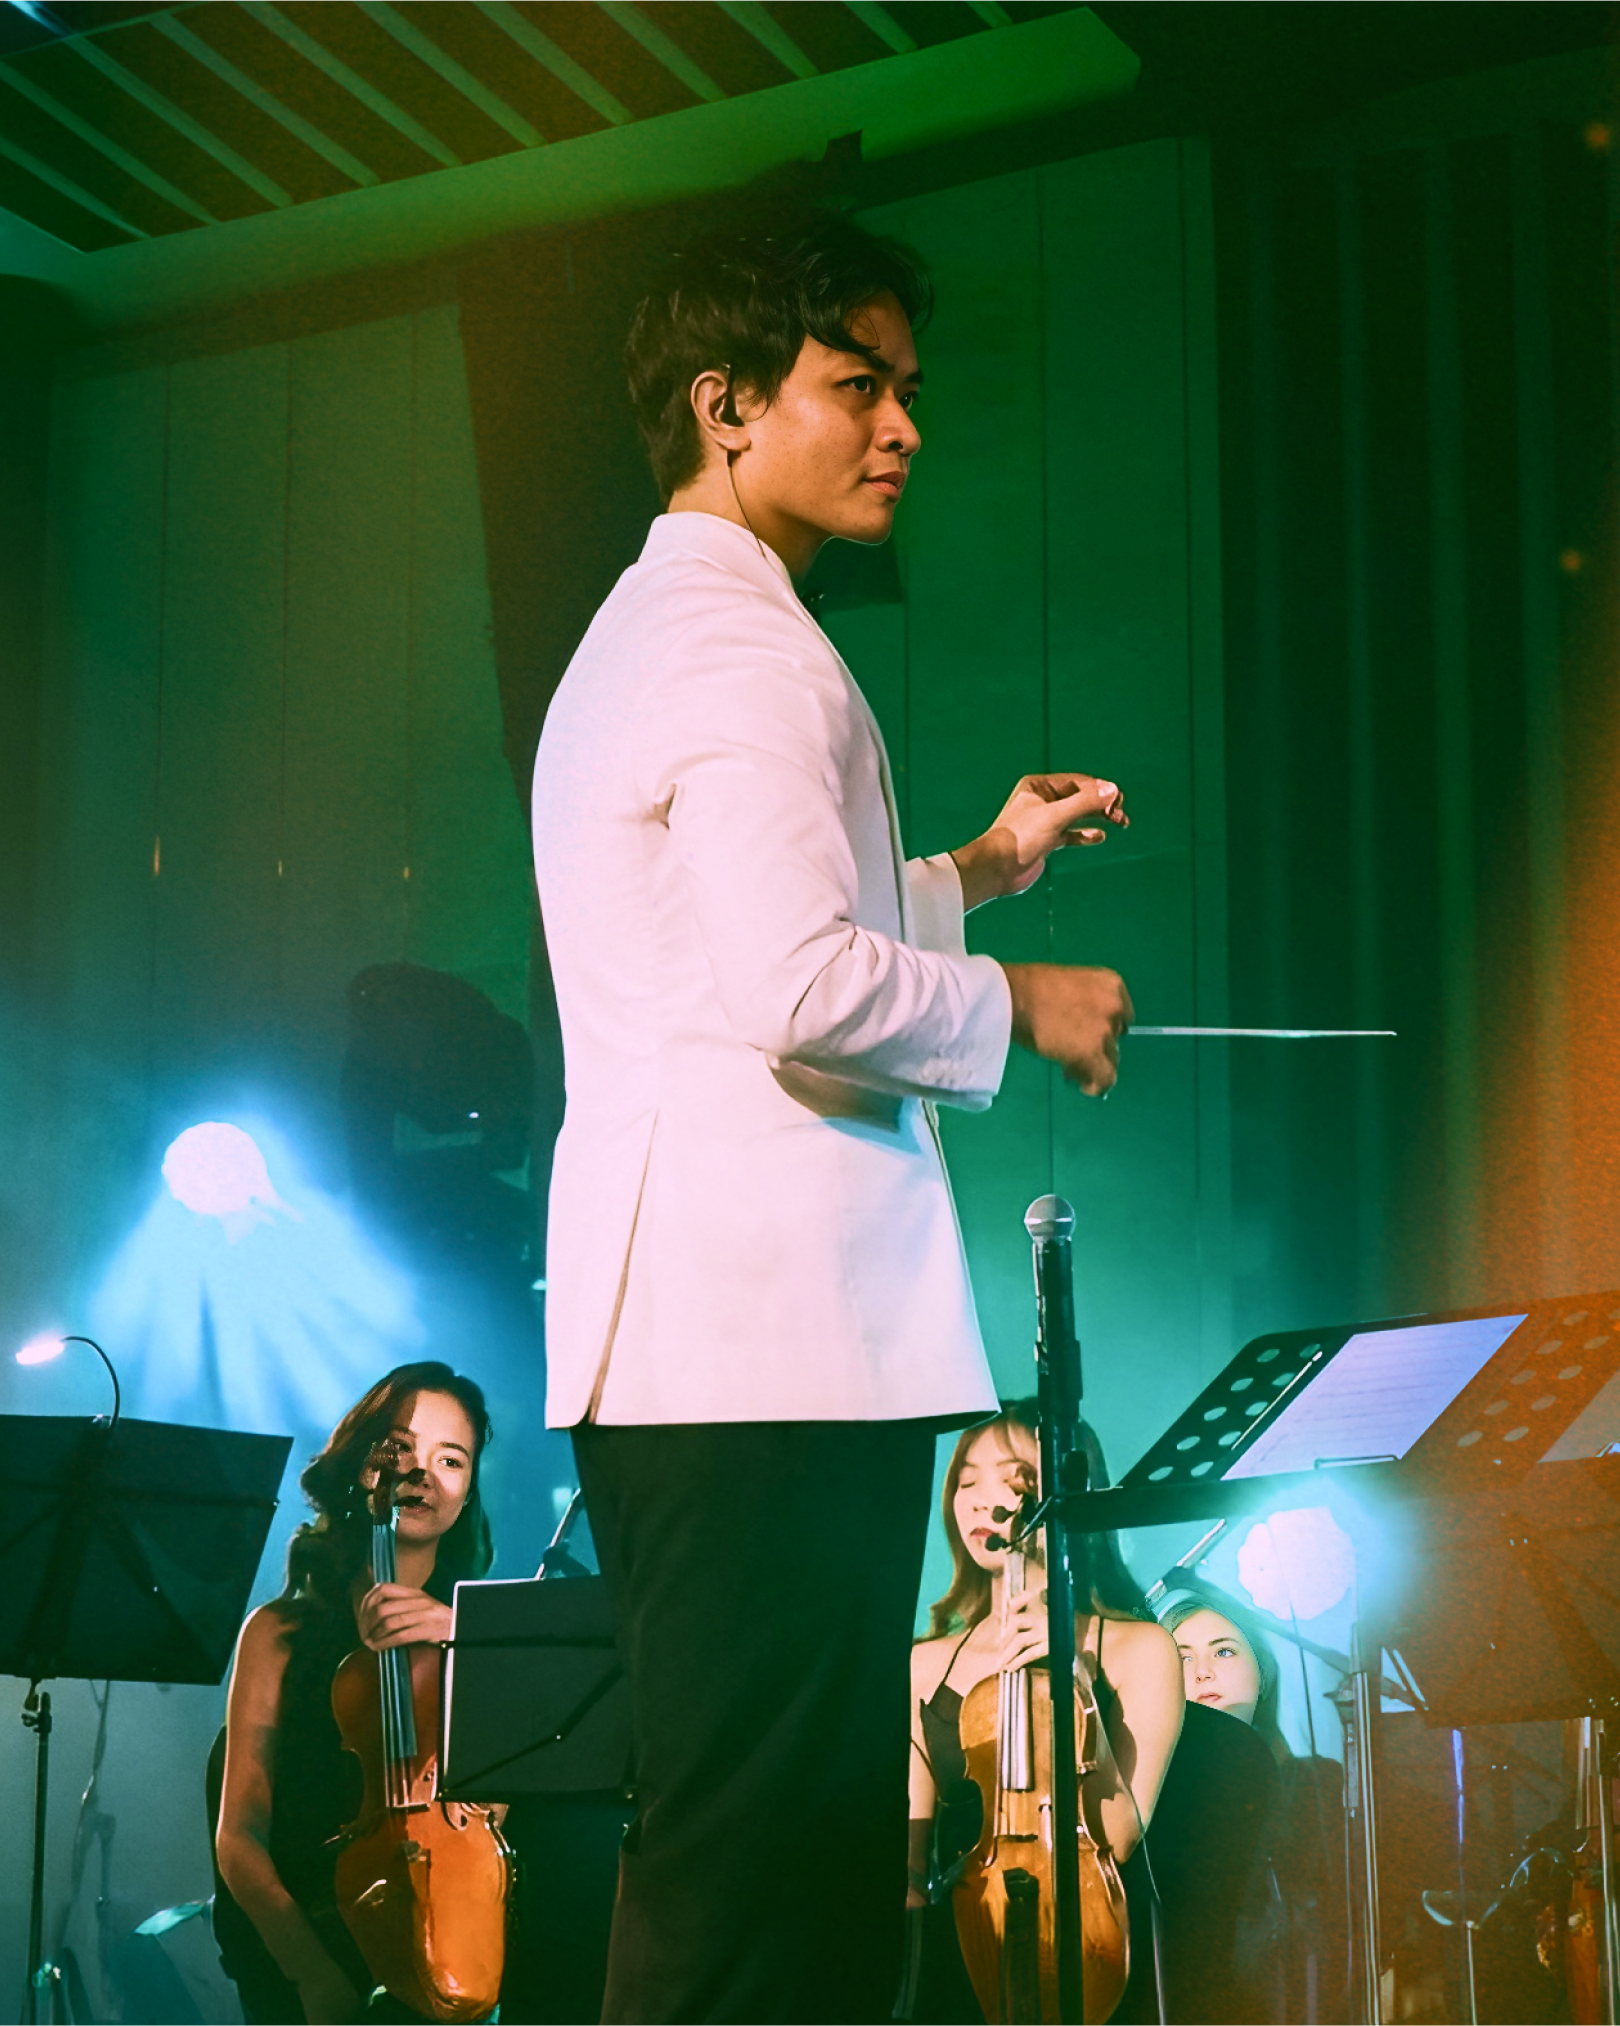 Dustin Tiêu - nhạc trưởng Gen Z tài năng, người đưa nhạc “hàn lâm” gần gũi với người trẻ